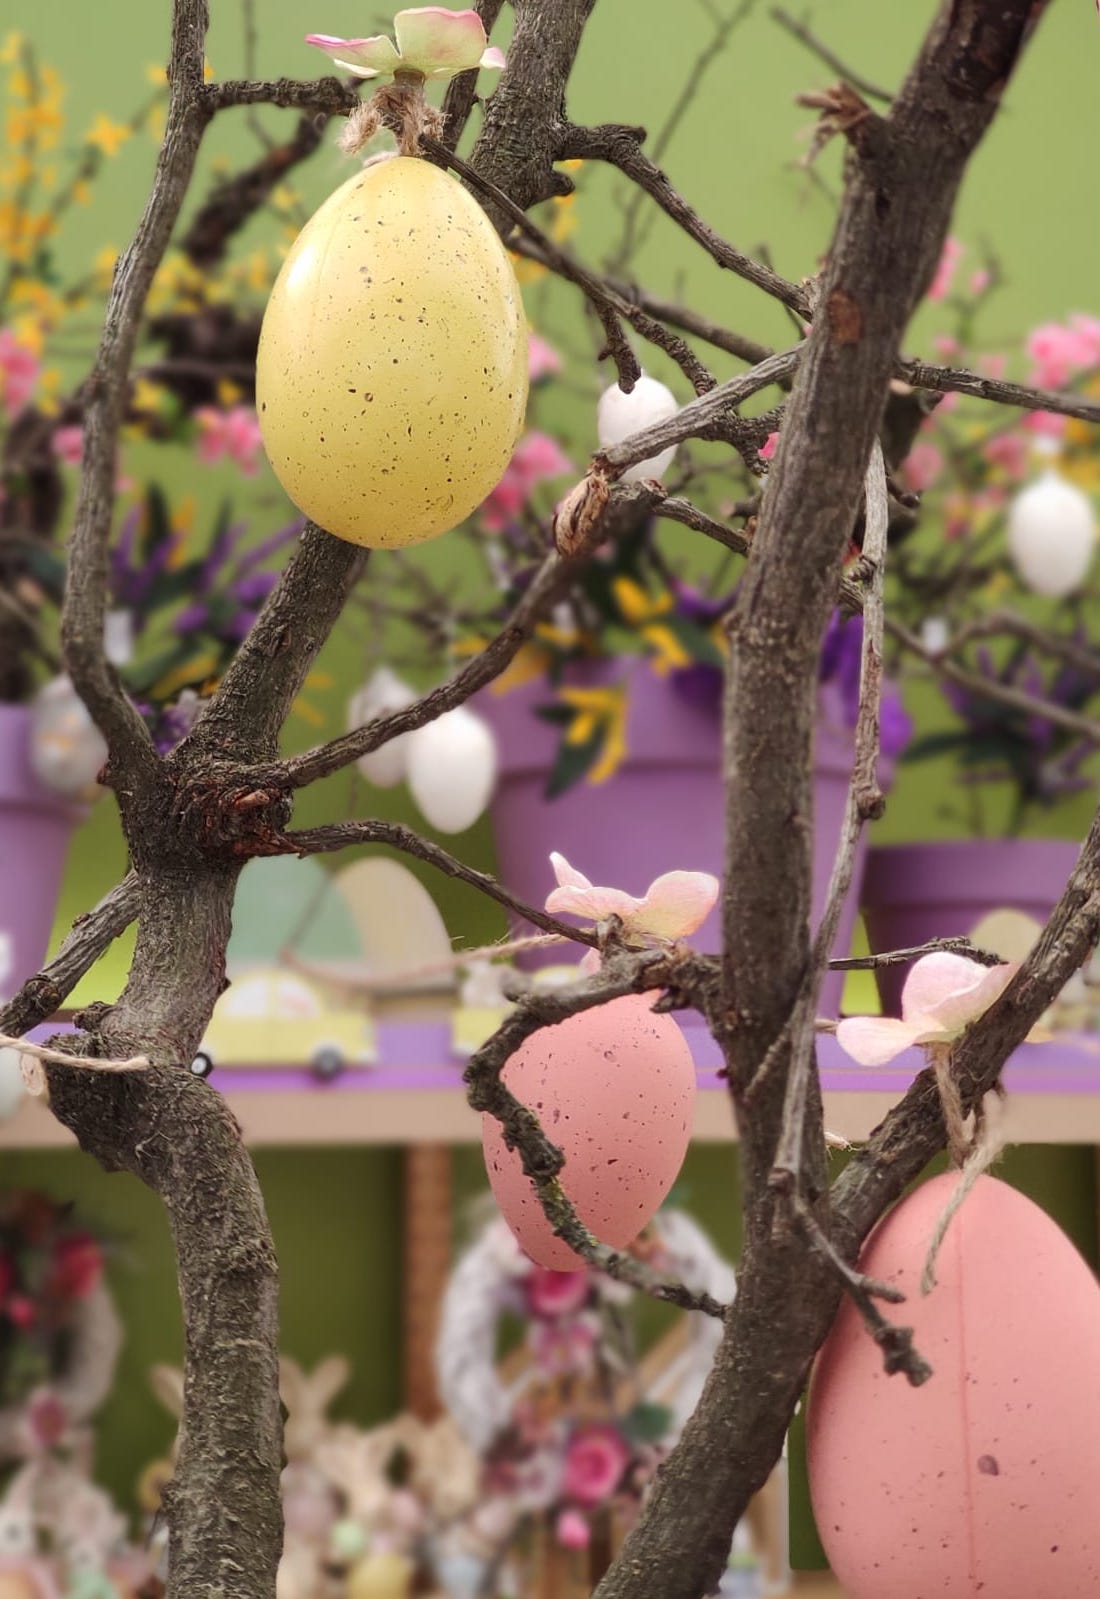 L'Albero di Pasqua: tante idee su come decorarlo!